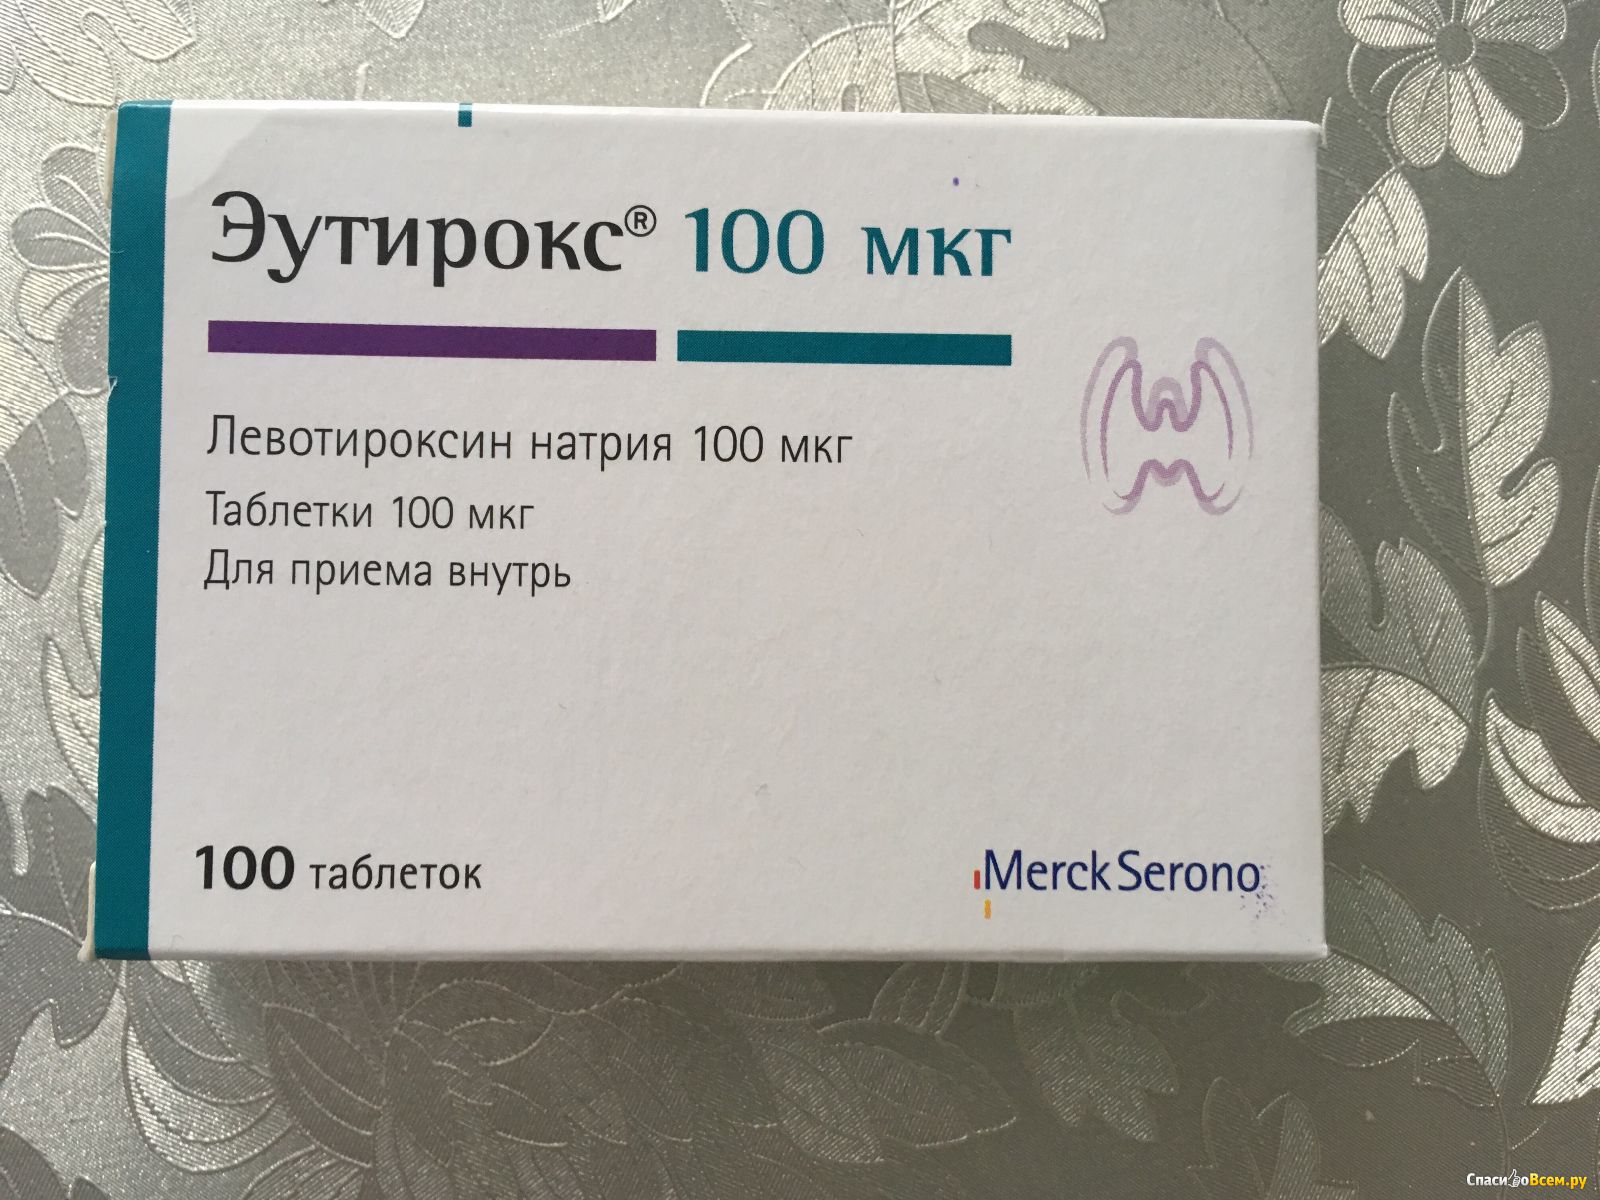 Л тироксин 100 применение. Эутирокс 50 мг. Таблетки для щитовидки эутирокс 100. Эутирокс 100 мг производители.